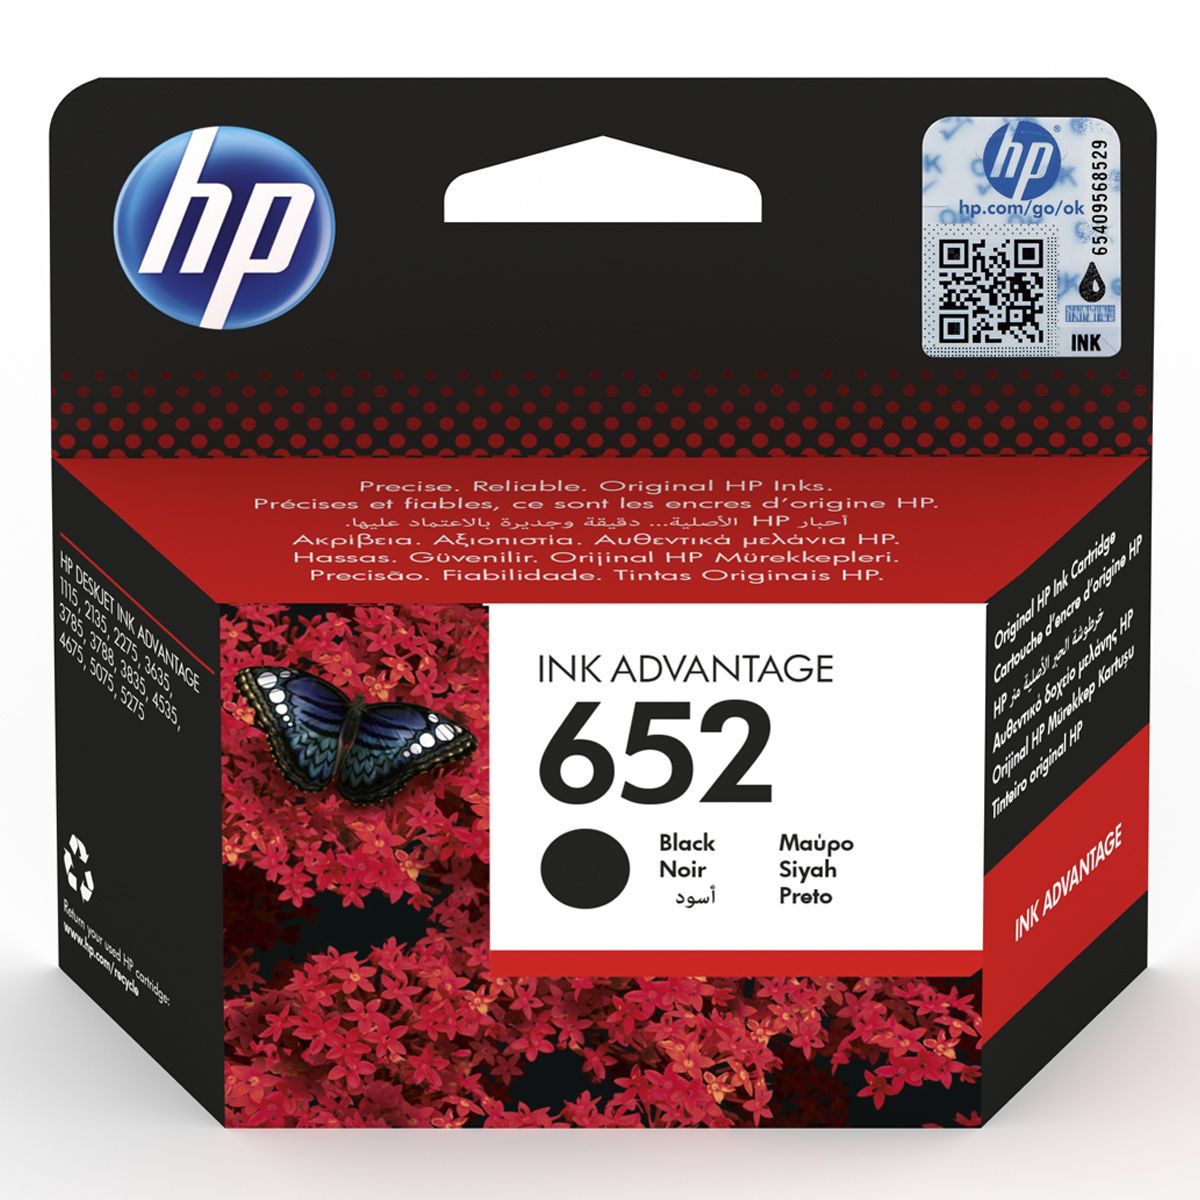 HP Ink Cartridge, F6V25AE, 652, Black